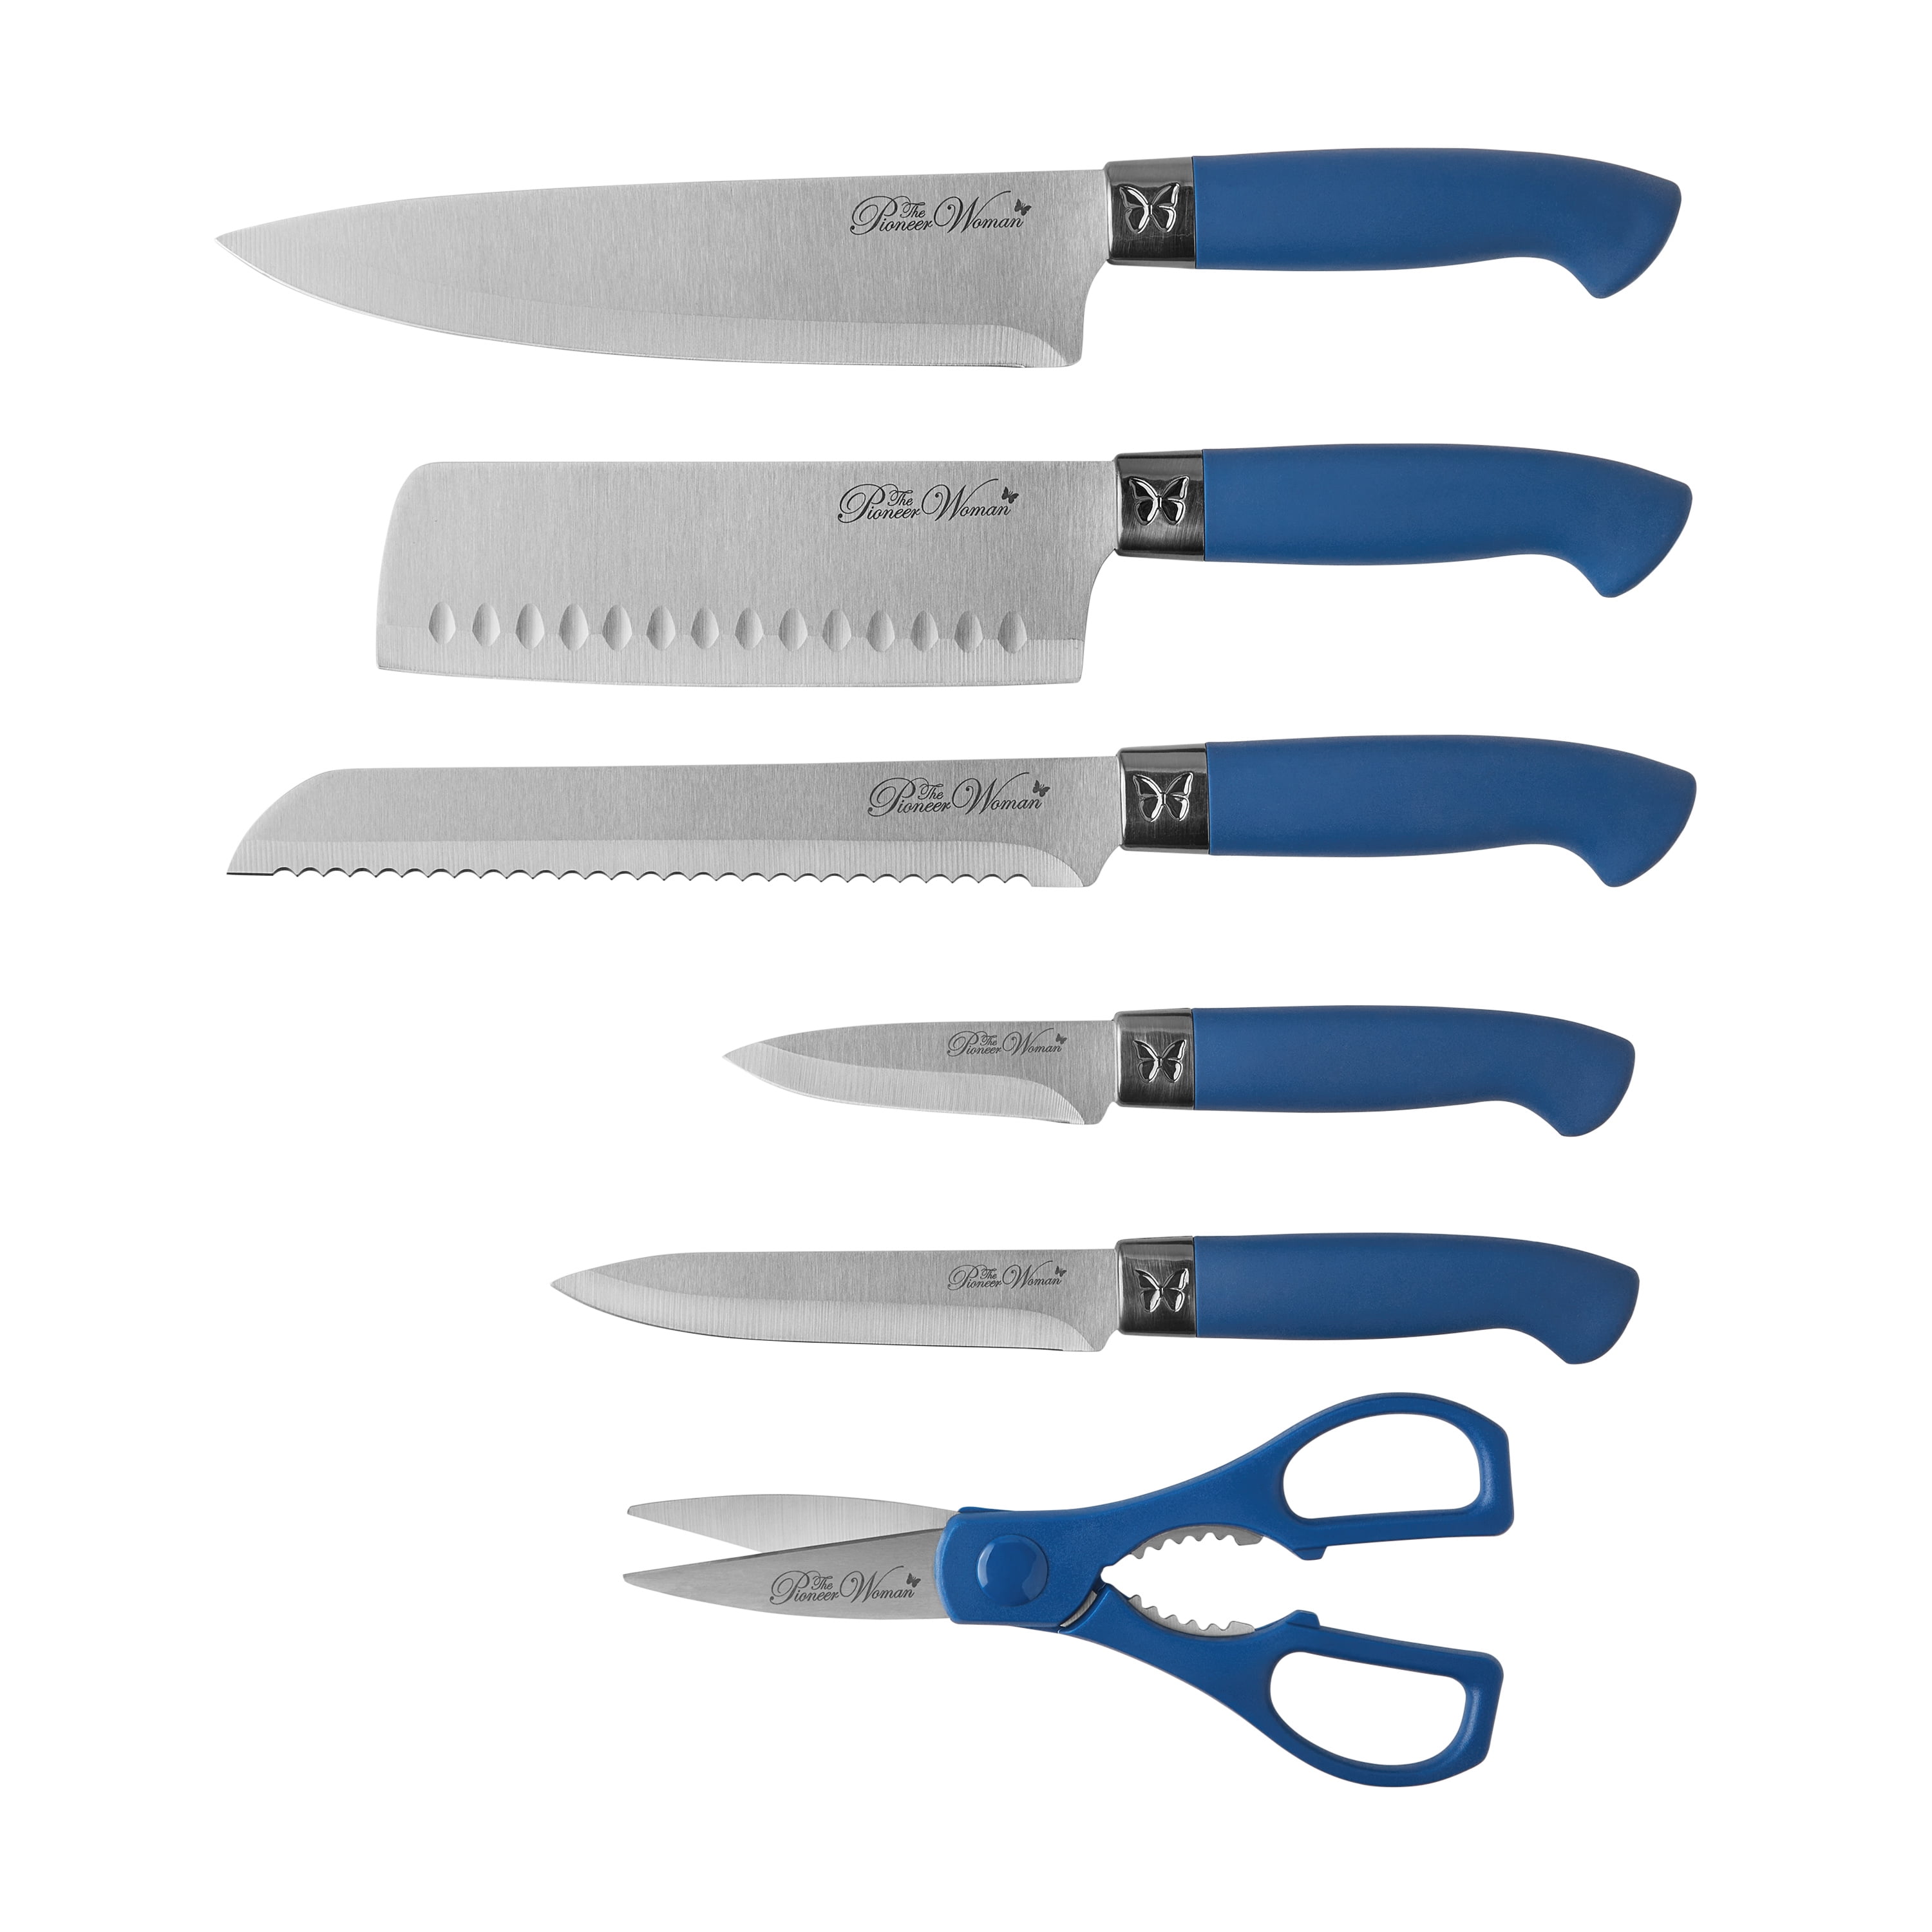  BASS STAINLESS STEEL MODERN KNIFE BLOCK 11 PIECE SET (Gray):  Home & Kitchen